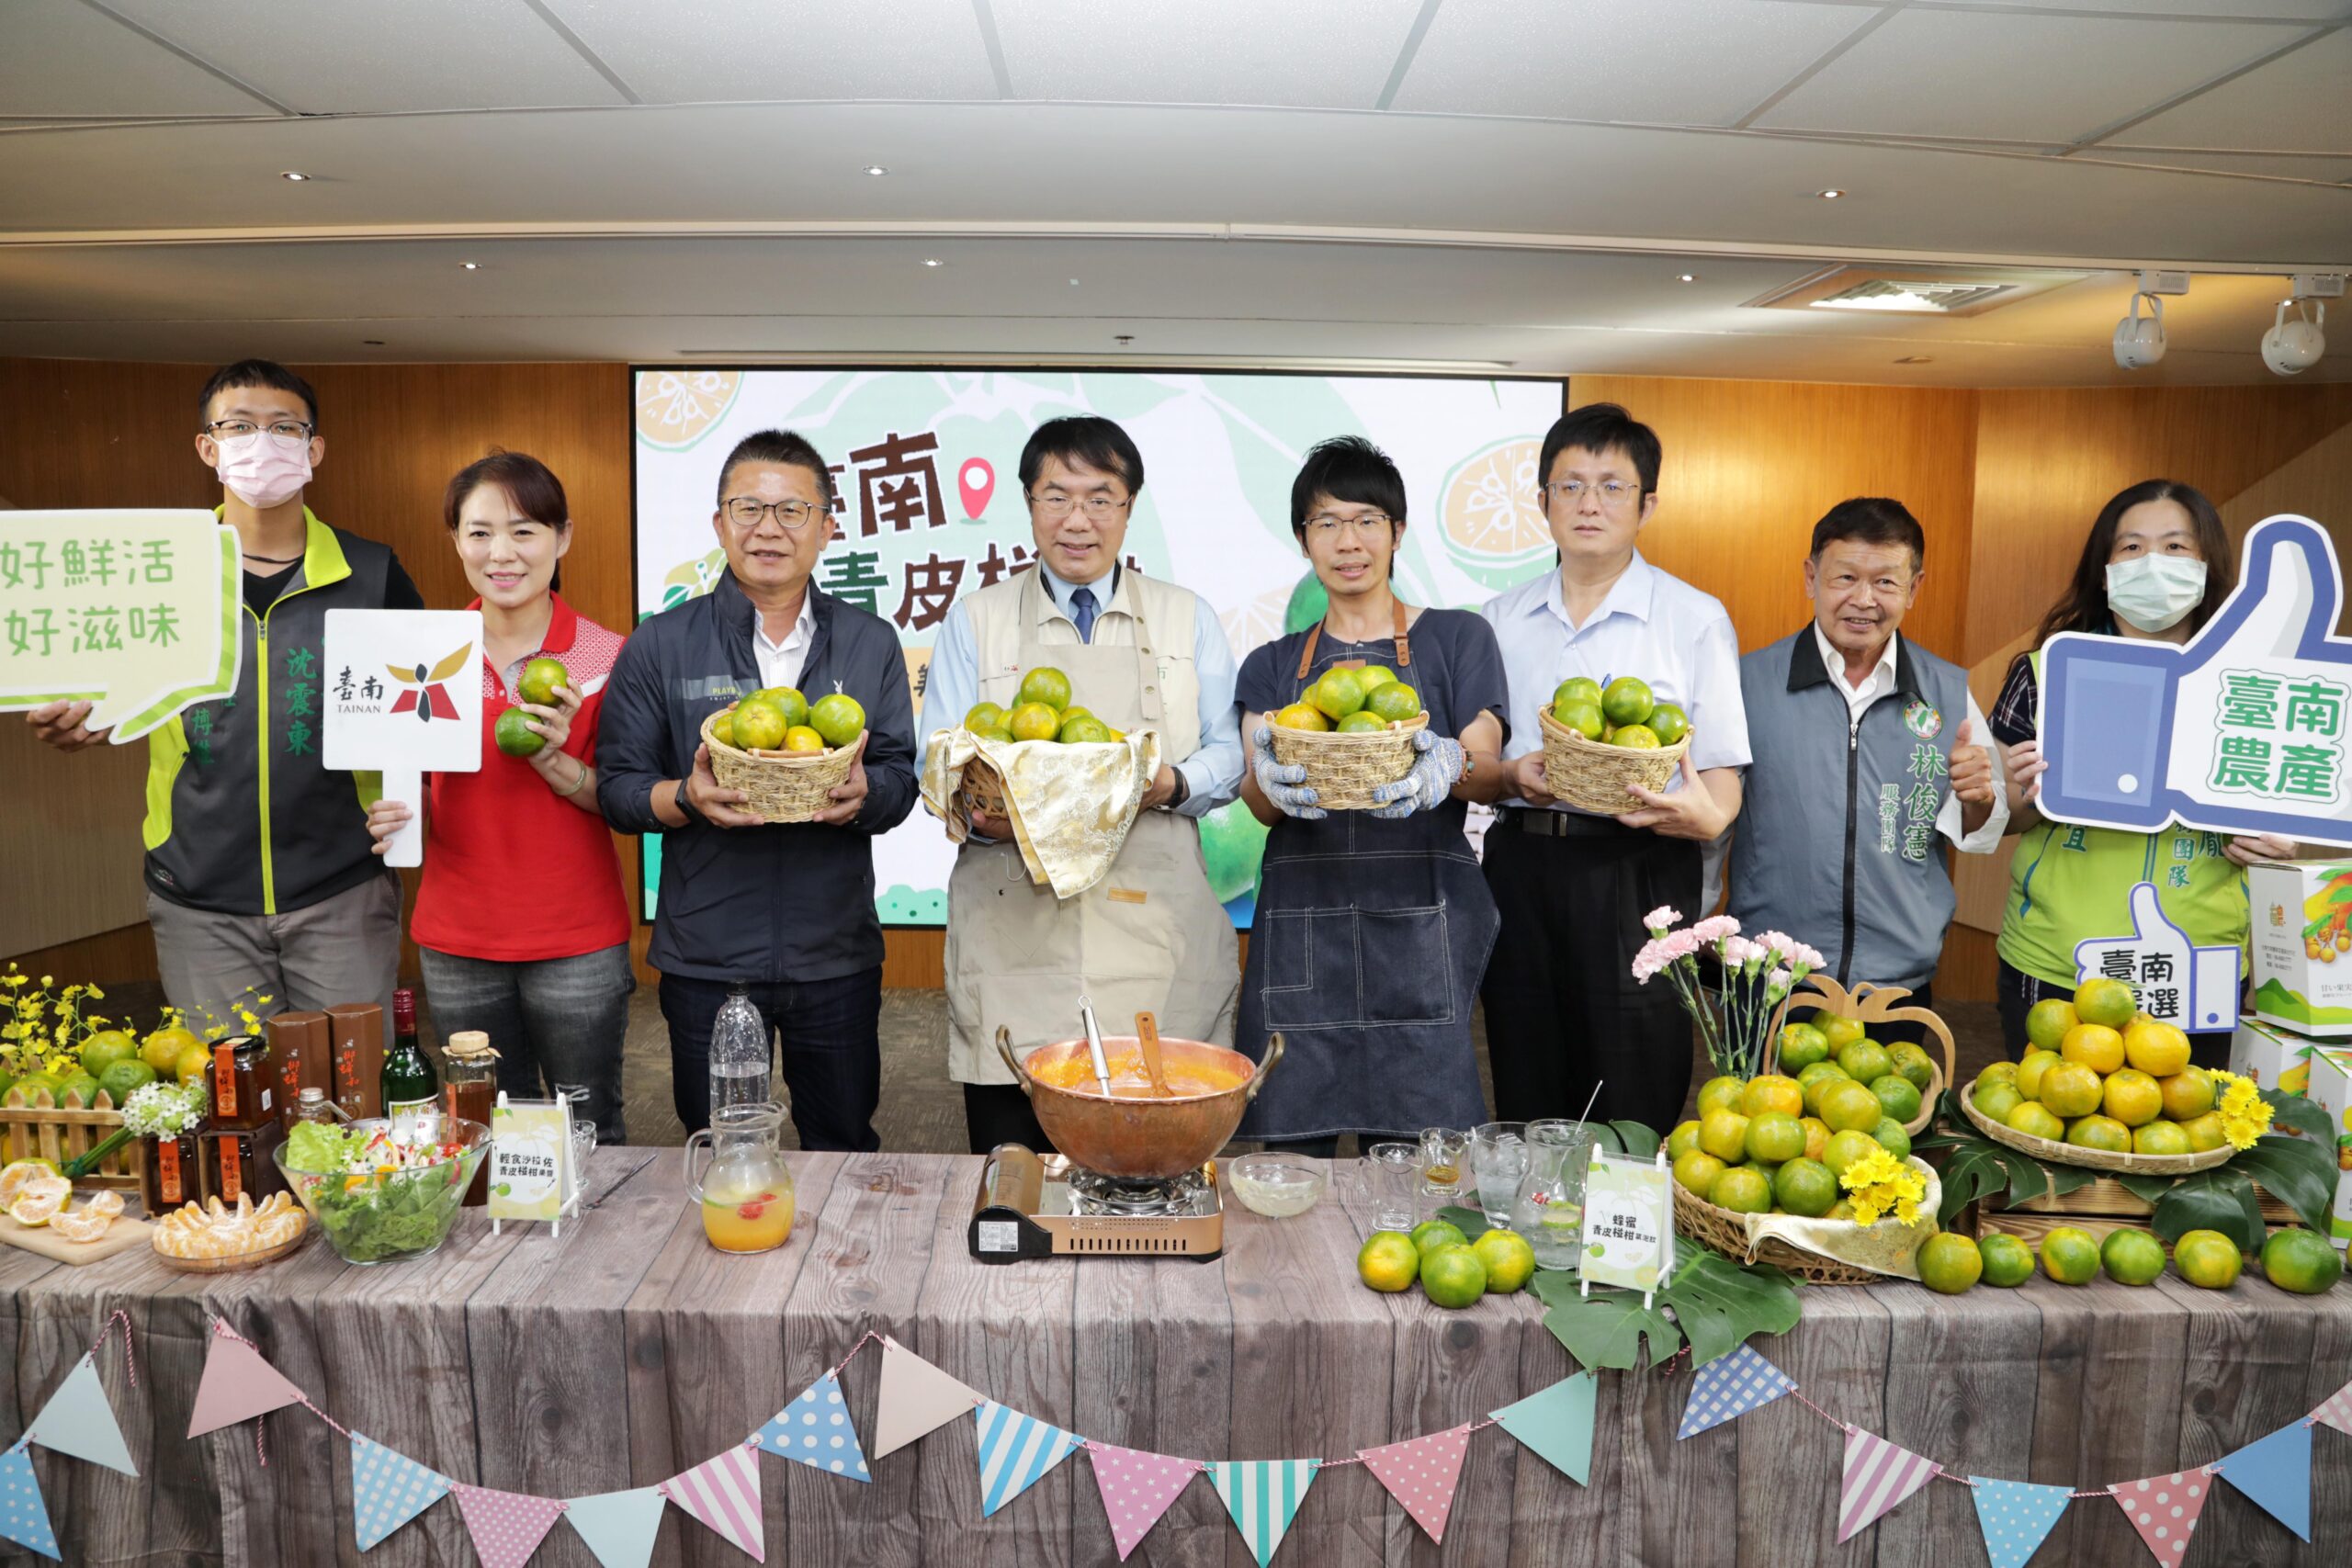 台南農業新品牌LOGO設計徵選　歡迎設計高手踴躍報名競技 | ETtoday新聞雲